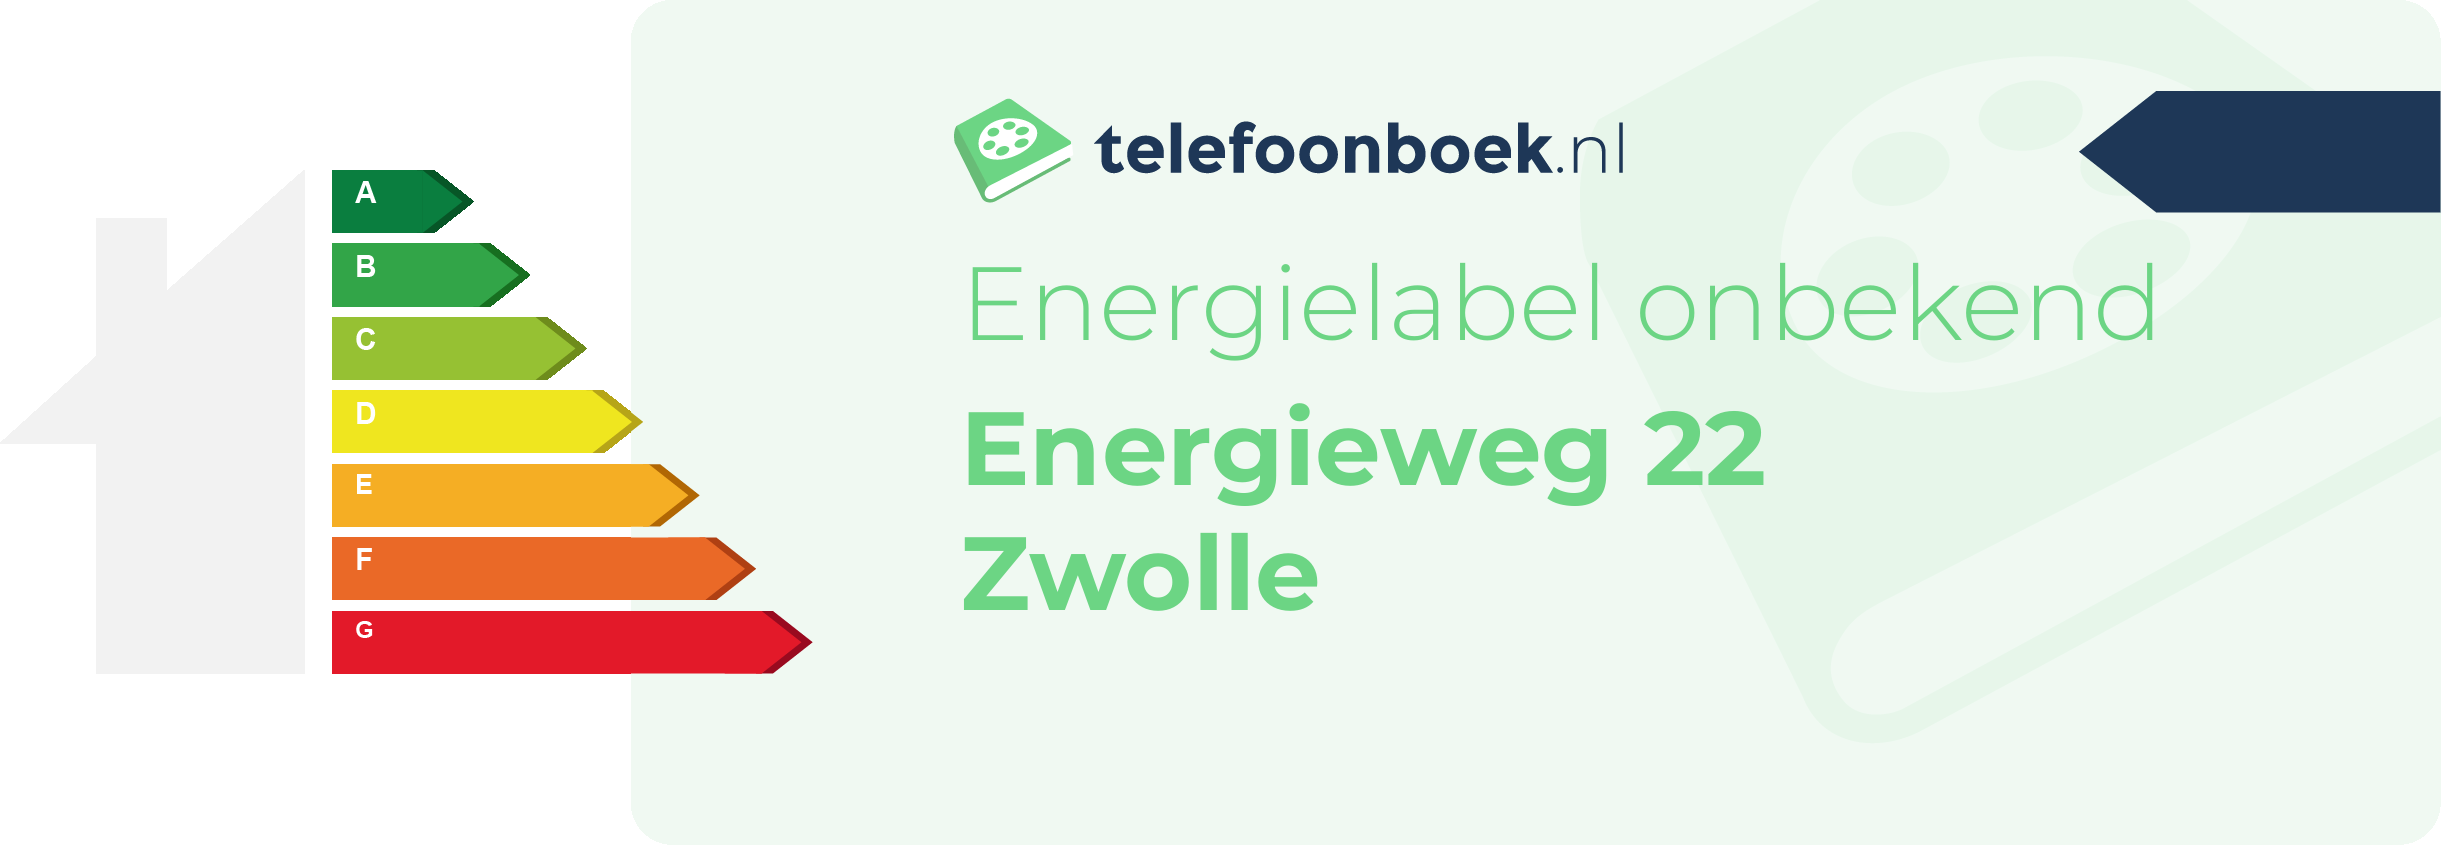 Energielabel Energieweg 22 Zwolle